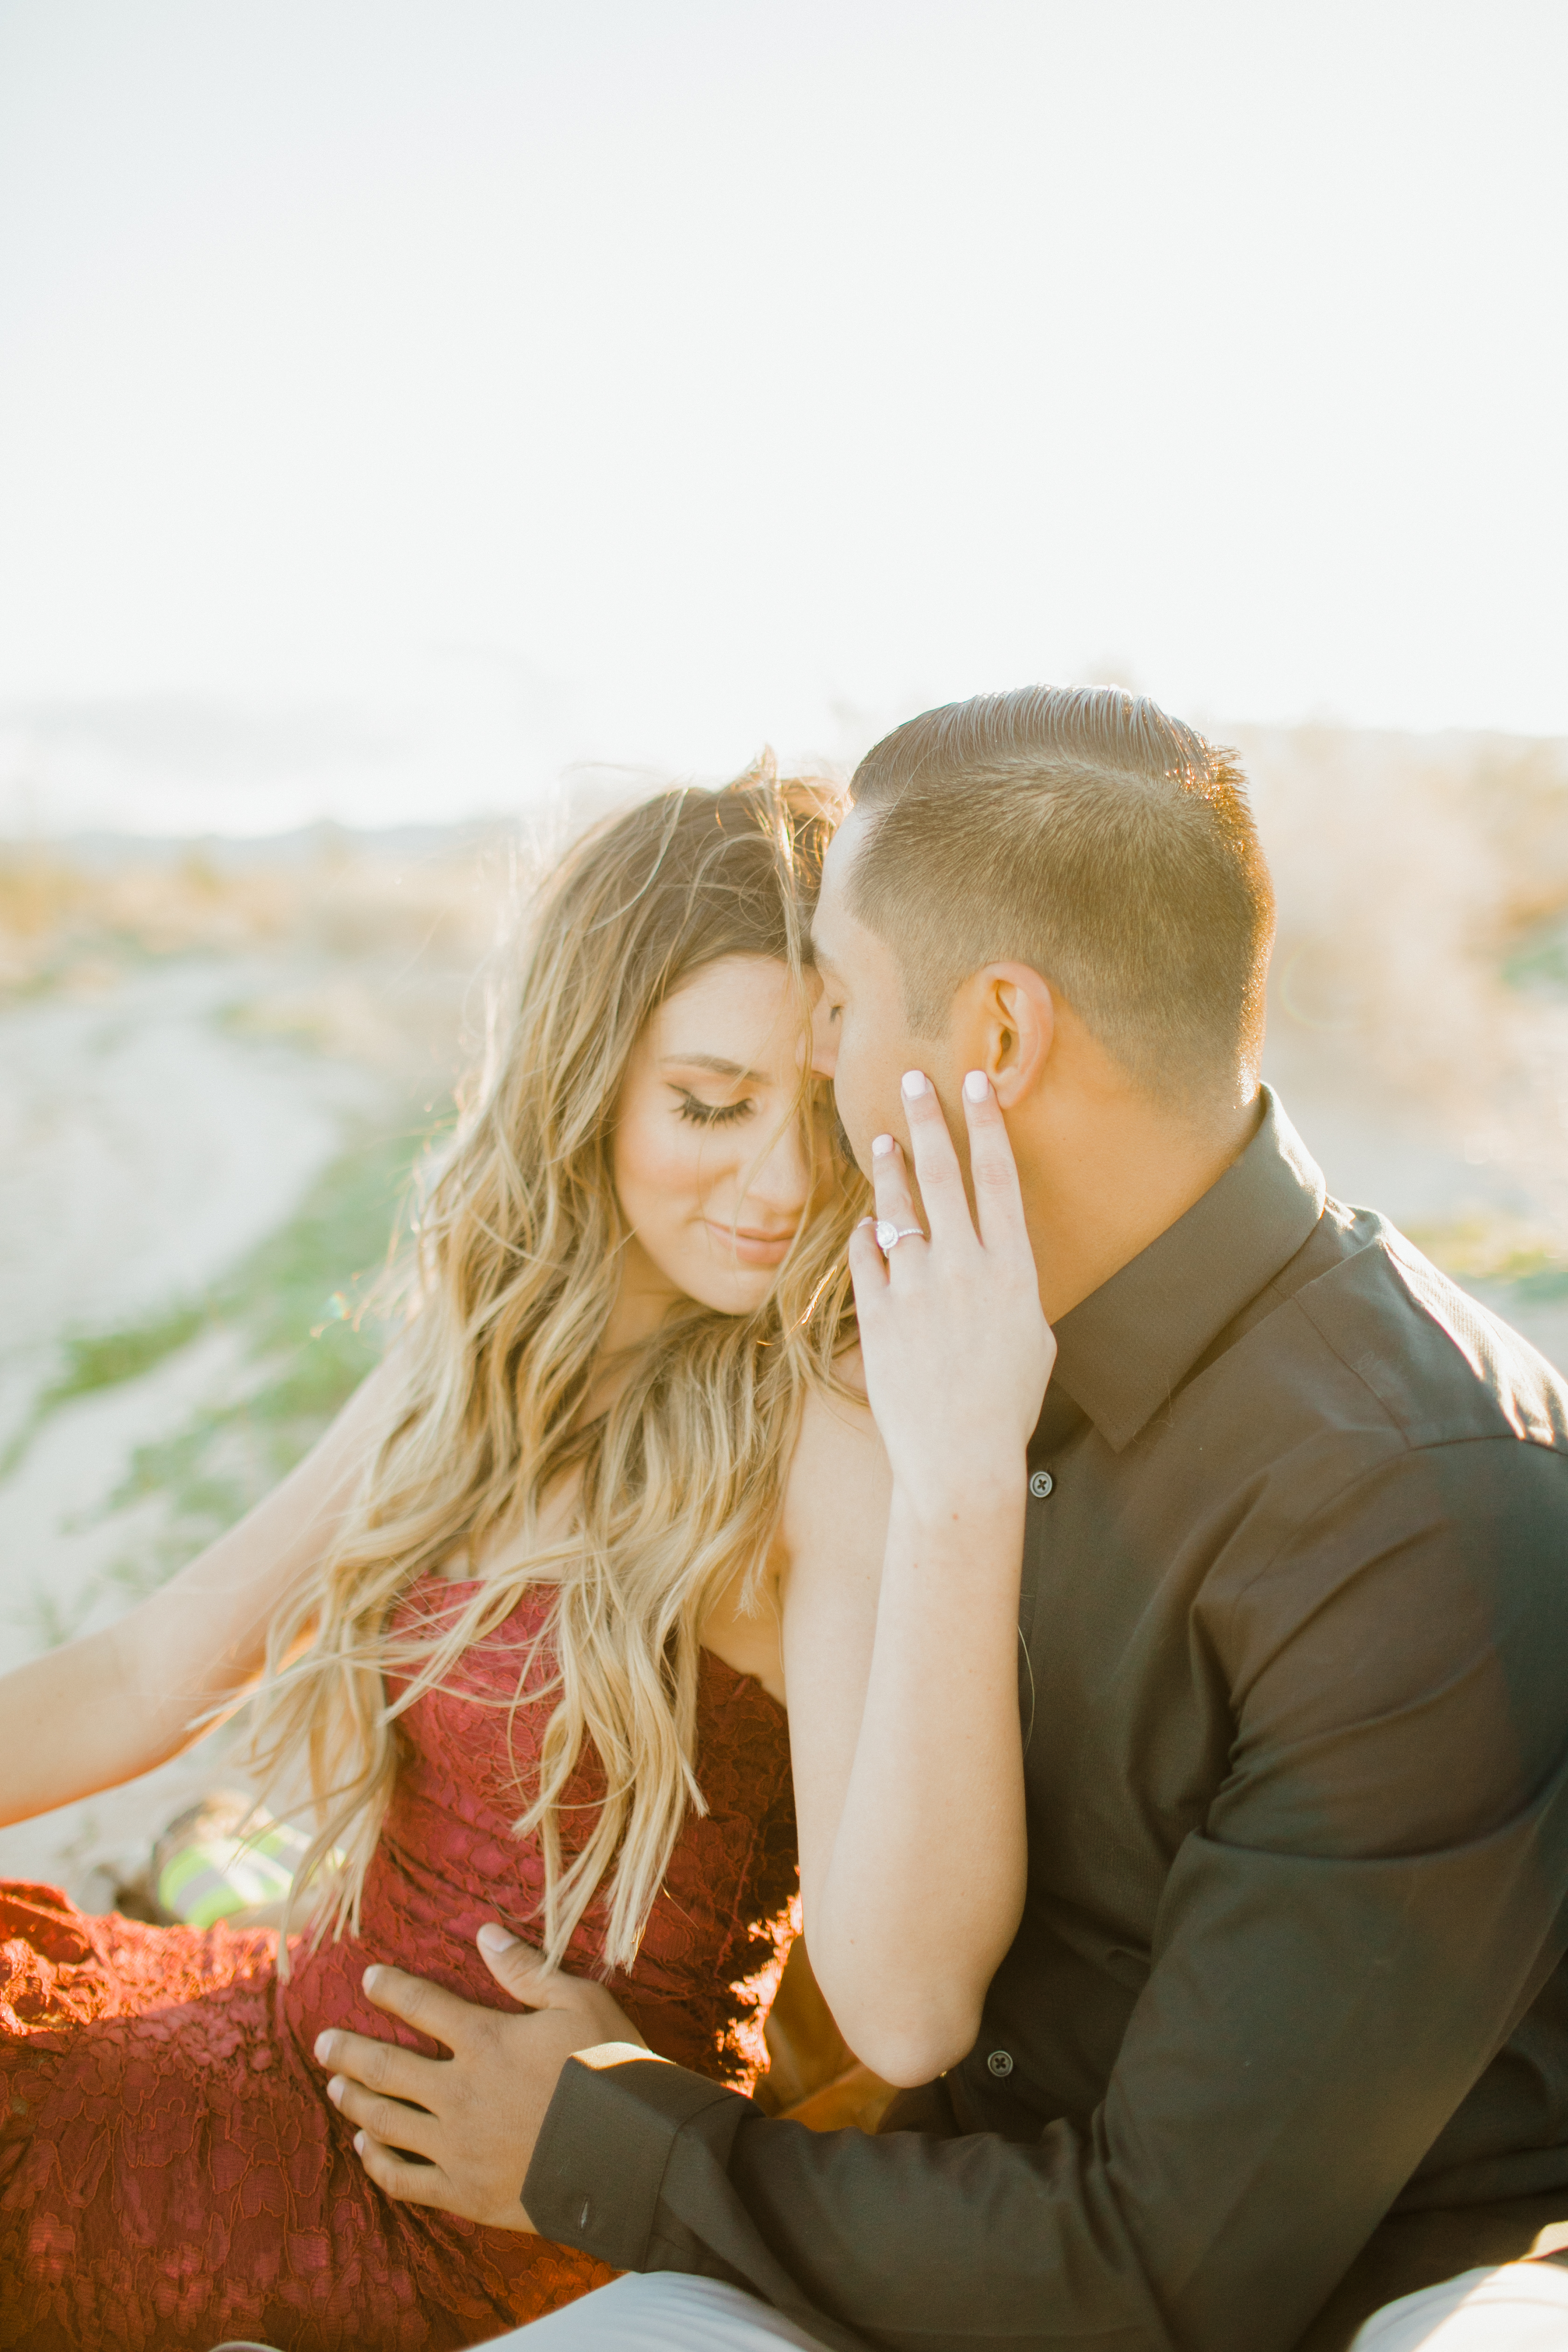 Engagement Photography, couple photo